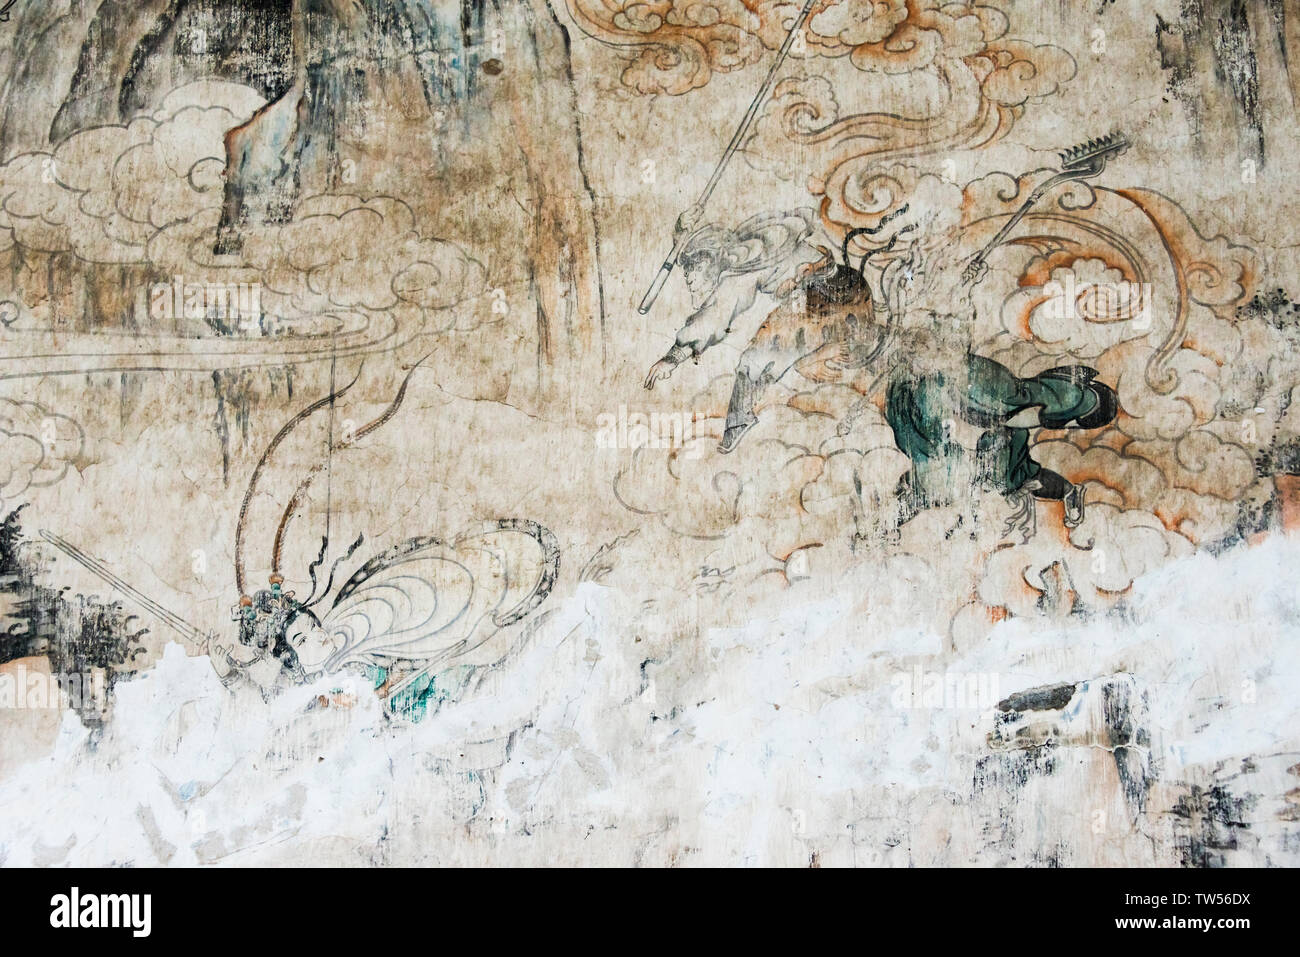 Peinture murale racontant l'histoire de voyage à l'Ouest, Xuanzang et ses partisans, Dafo (Grand Bouddha) Temple, Zhangye, Province de Gansu, Chine Banque D'Images